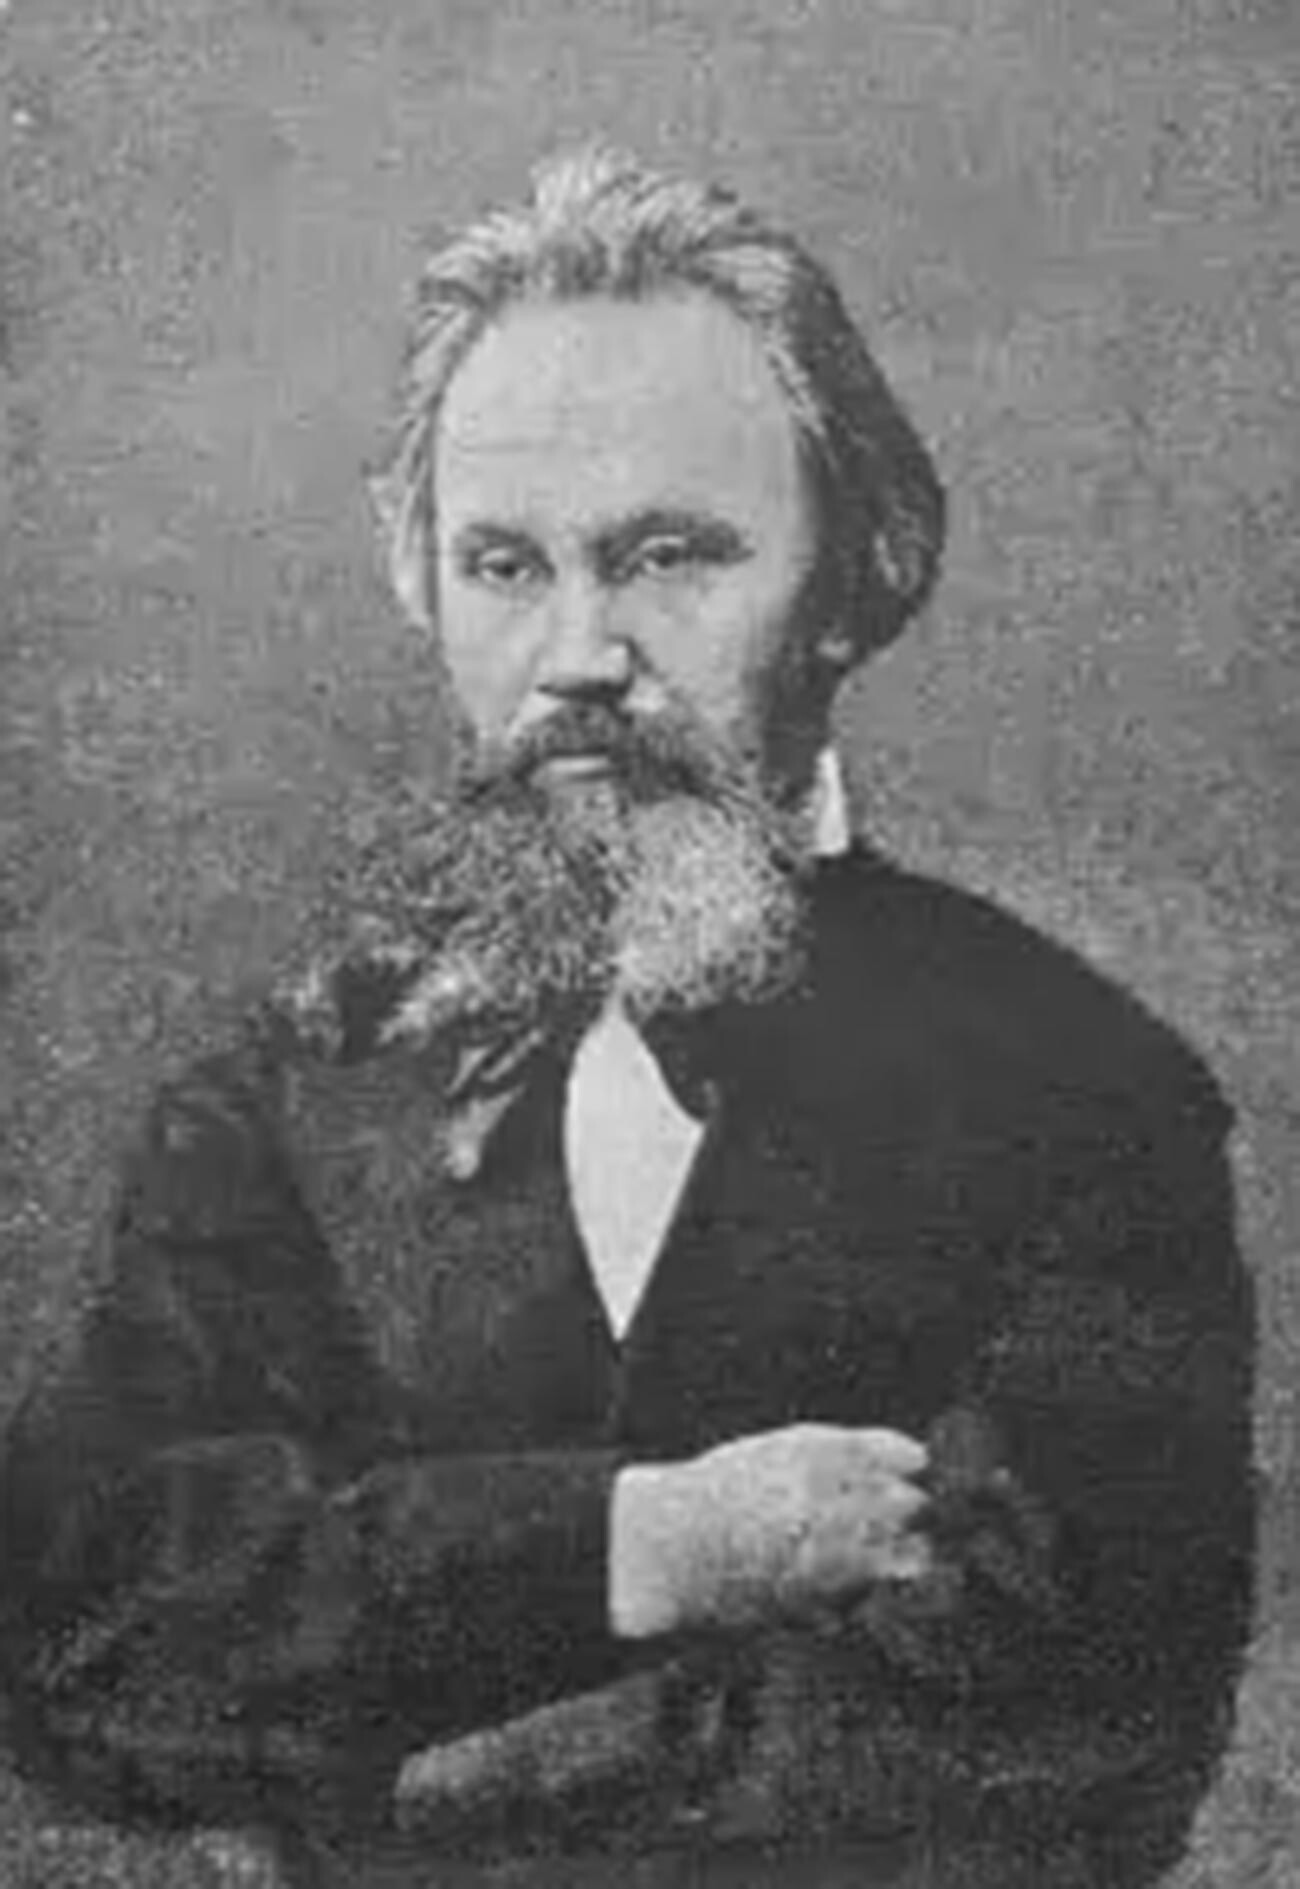 Aleksander Nikitič Frolov (1830-1909) - ruski umetnik mozaika, svobodni član društva in akademik Imperatorske akademije umetnosti. Oče Vladimirja Frolova.